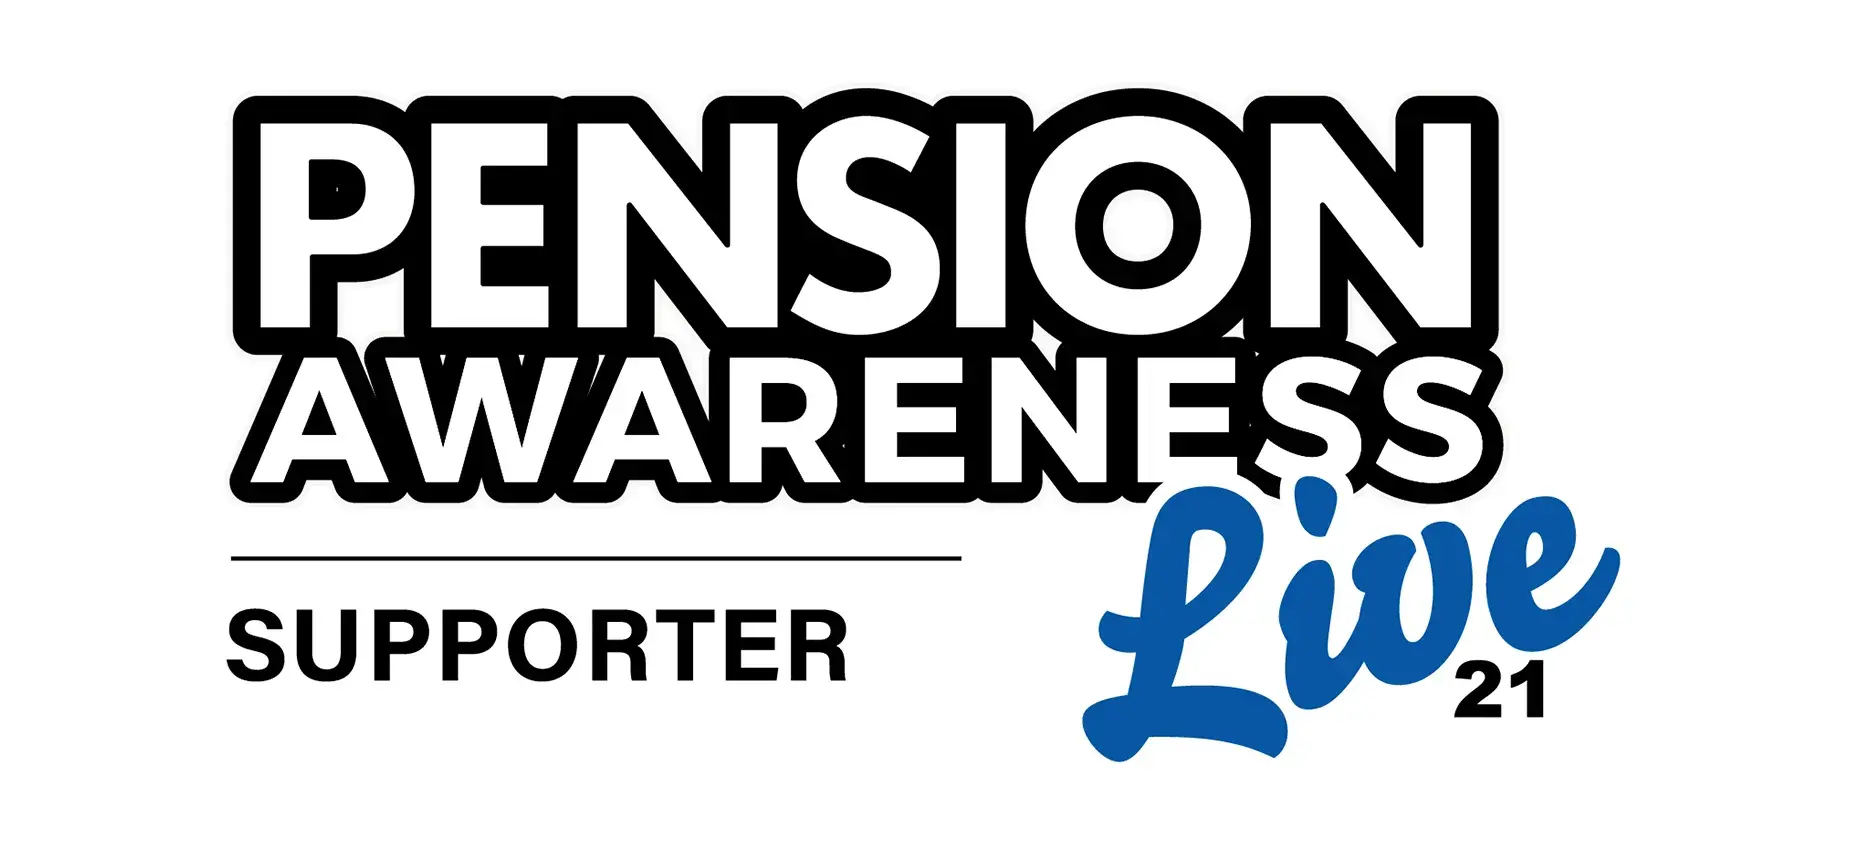 Pensions awareness week